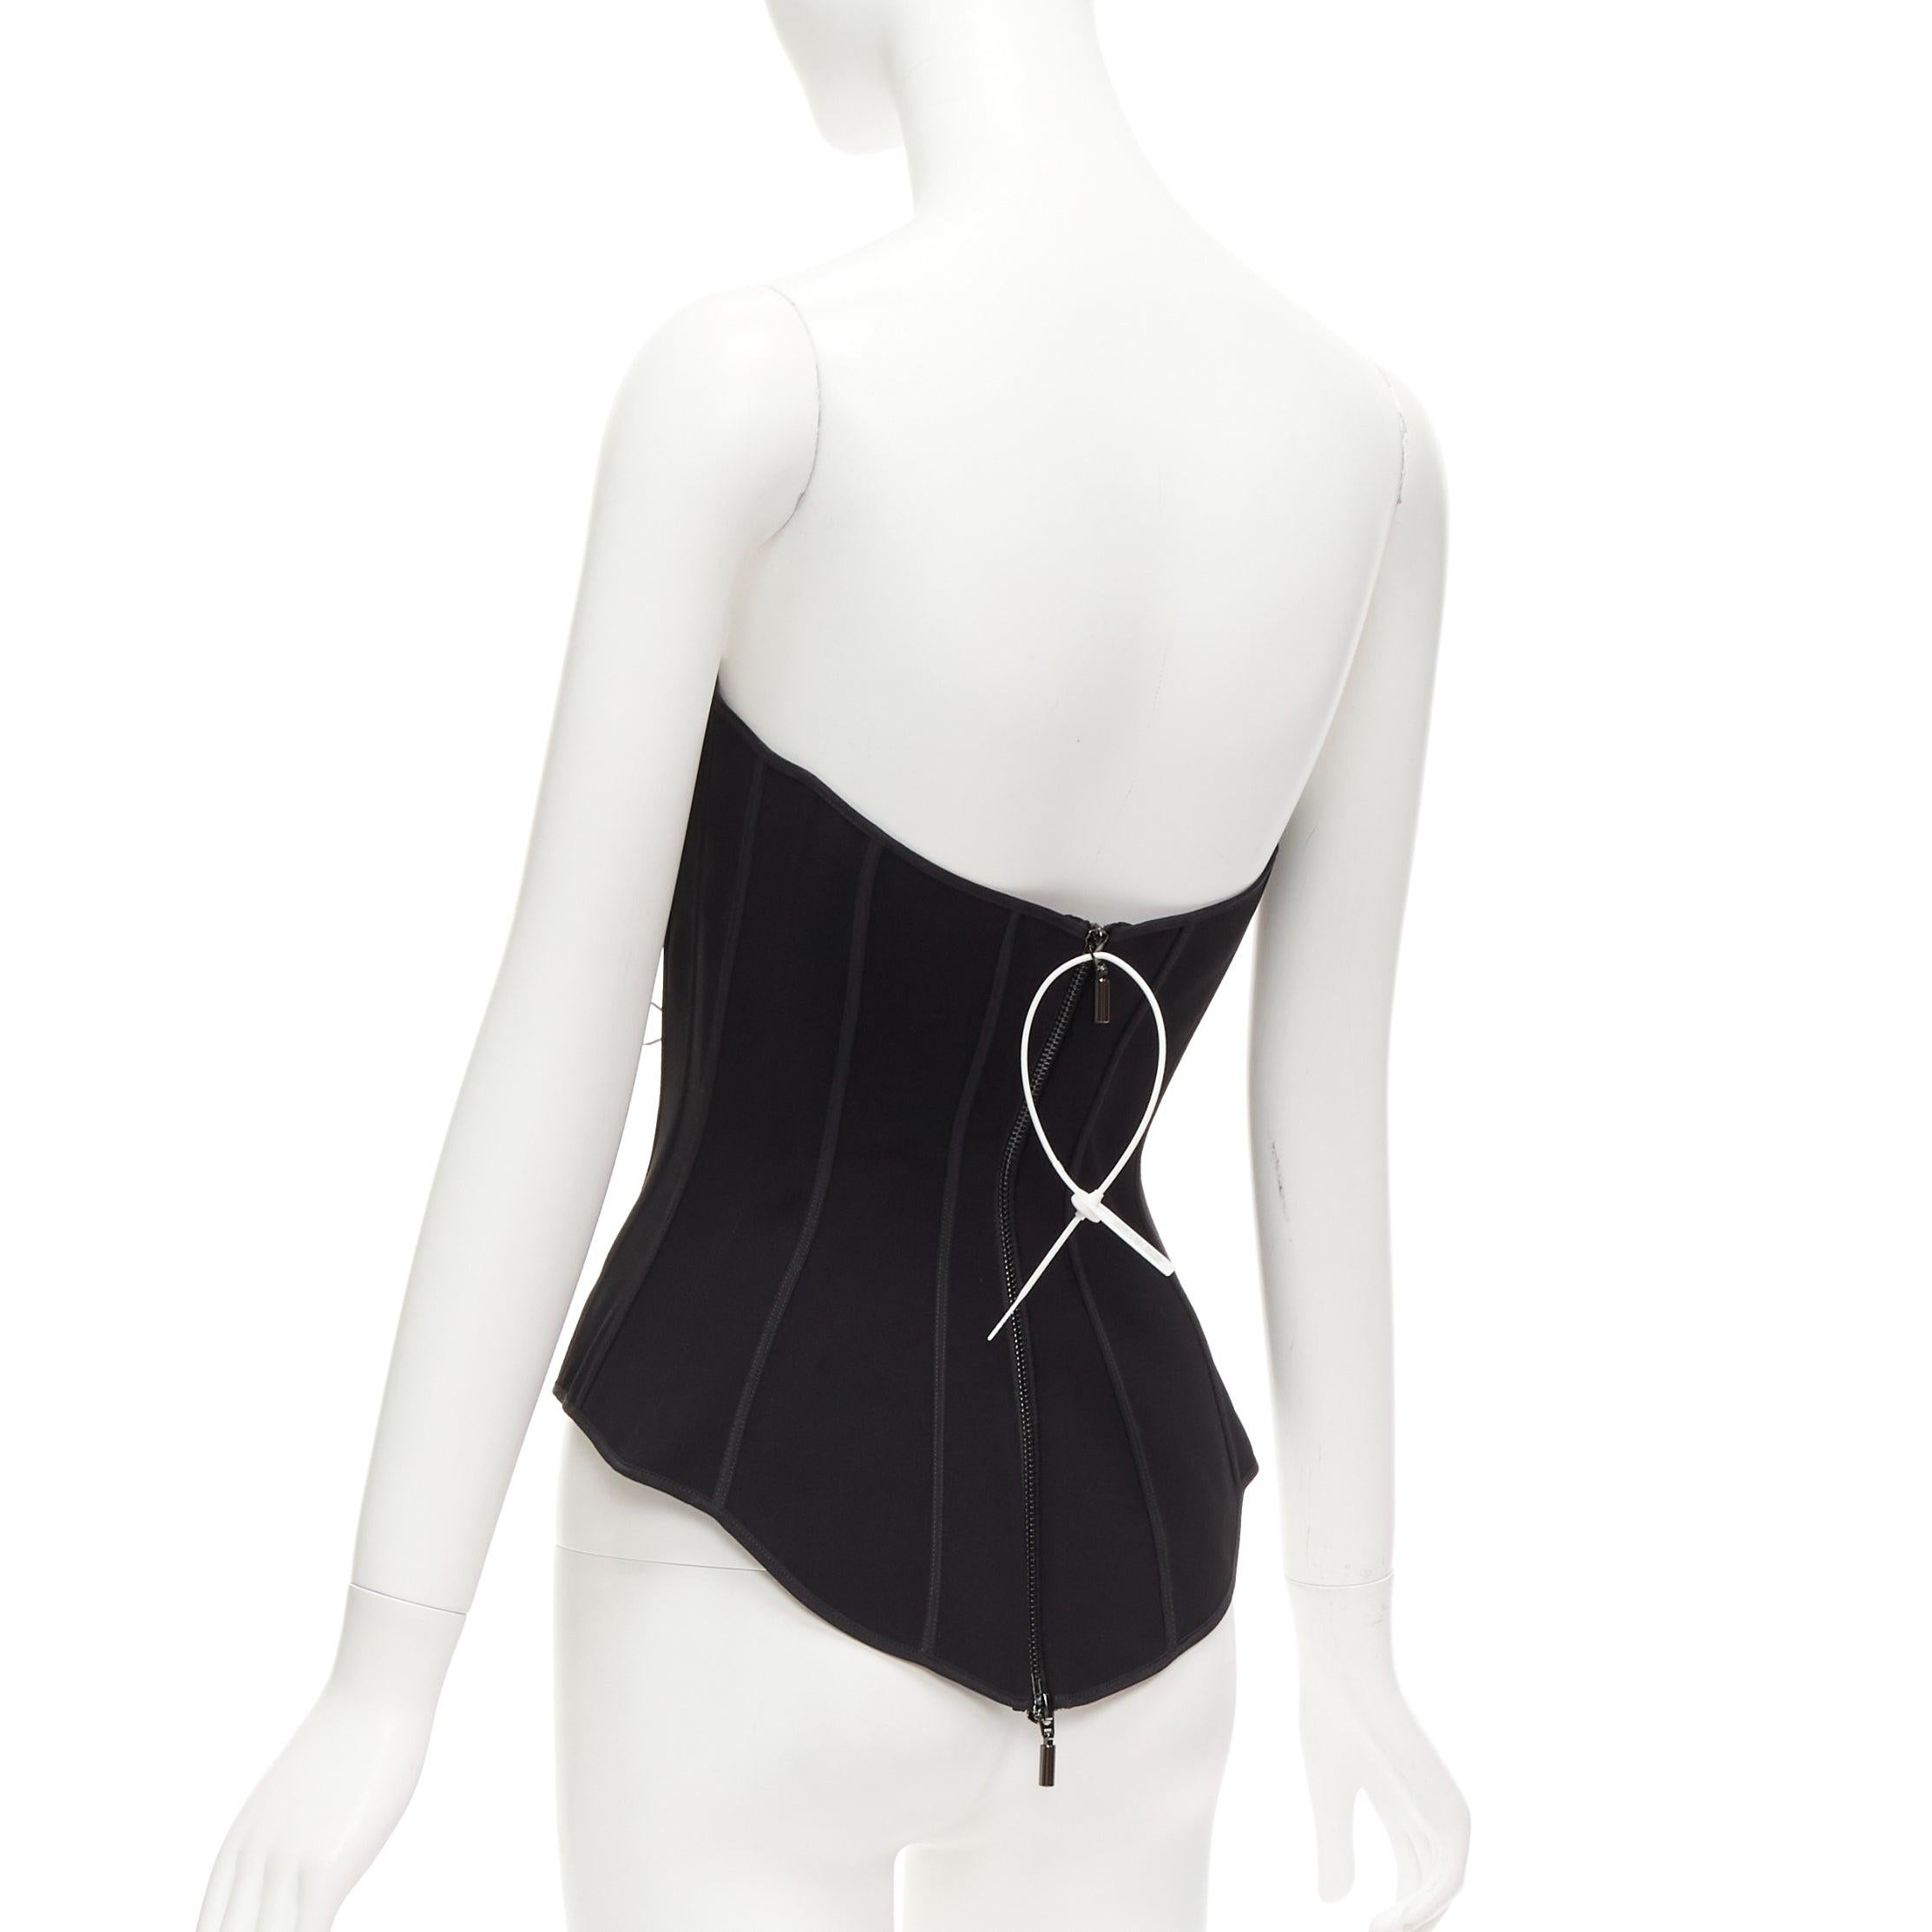 MATICEVSKI 2022 Fable Bustier black contour seam boned corset top AUS10 M For Sale 1